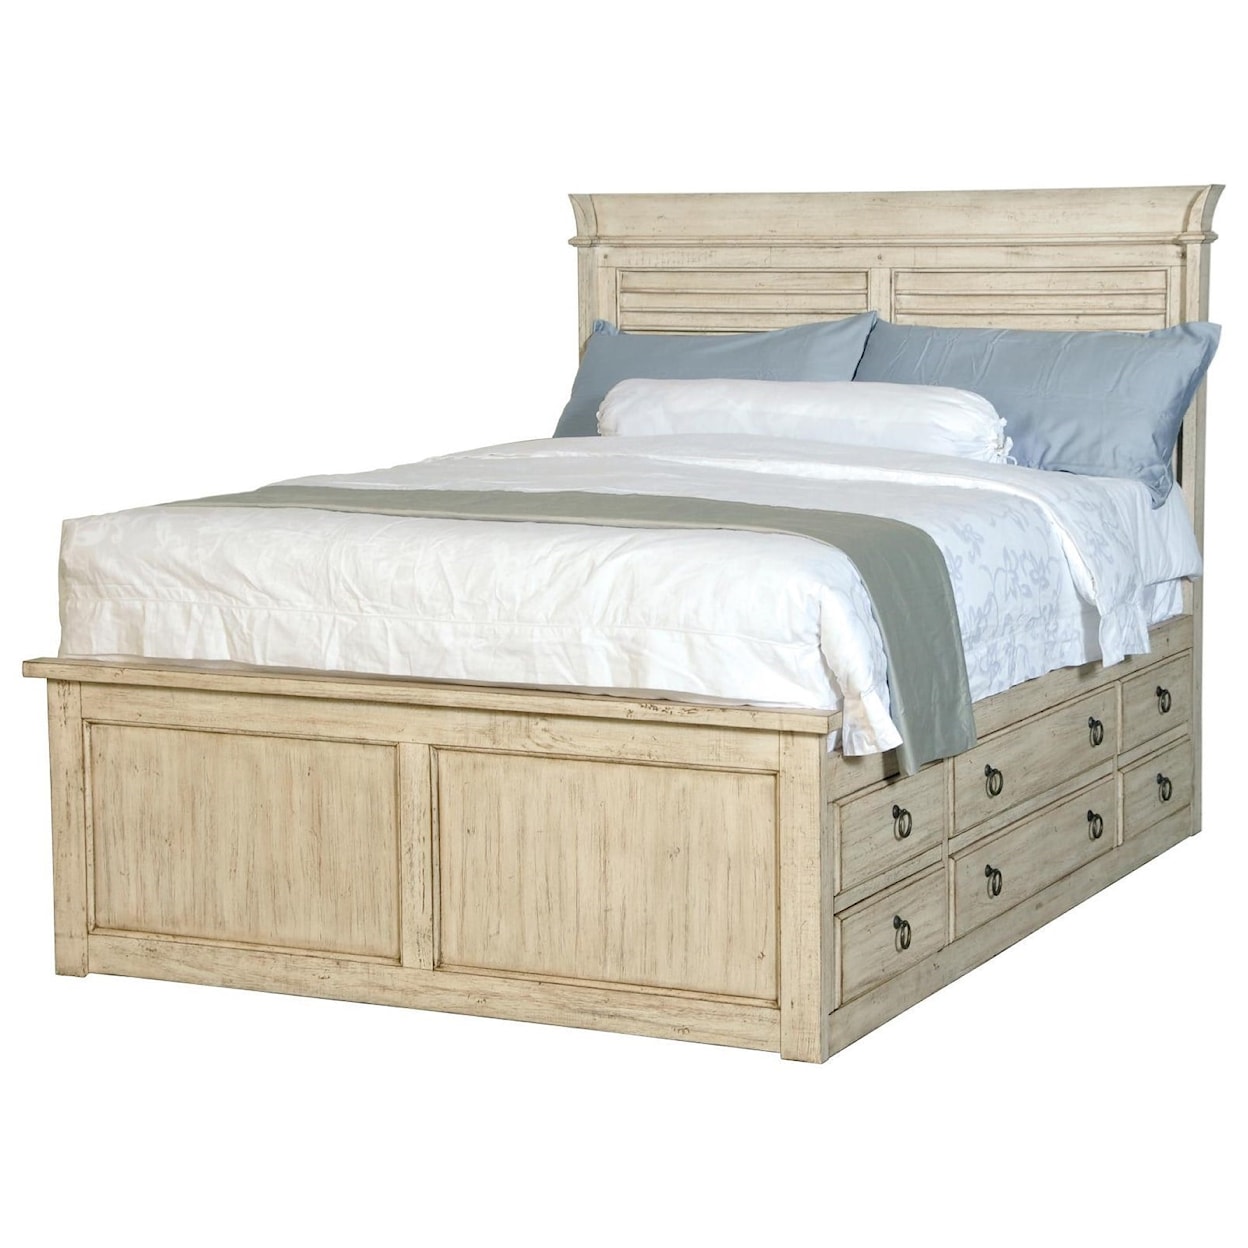 Napa Furniture Design Belmont King Captains Bed